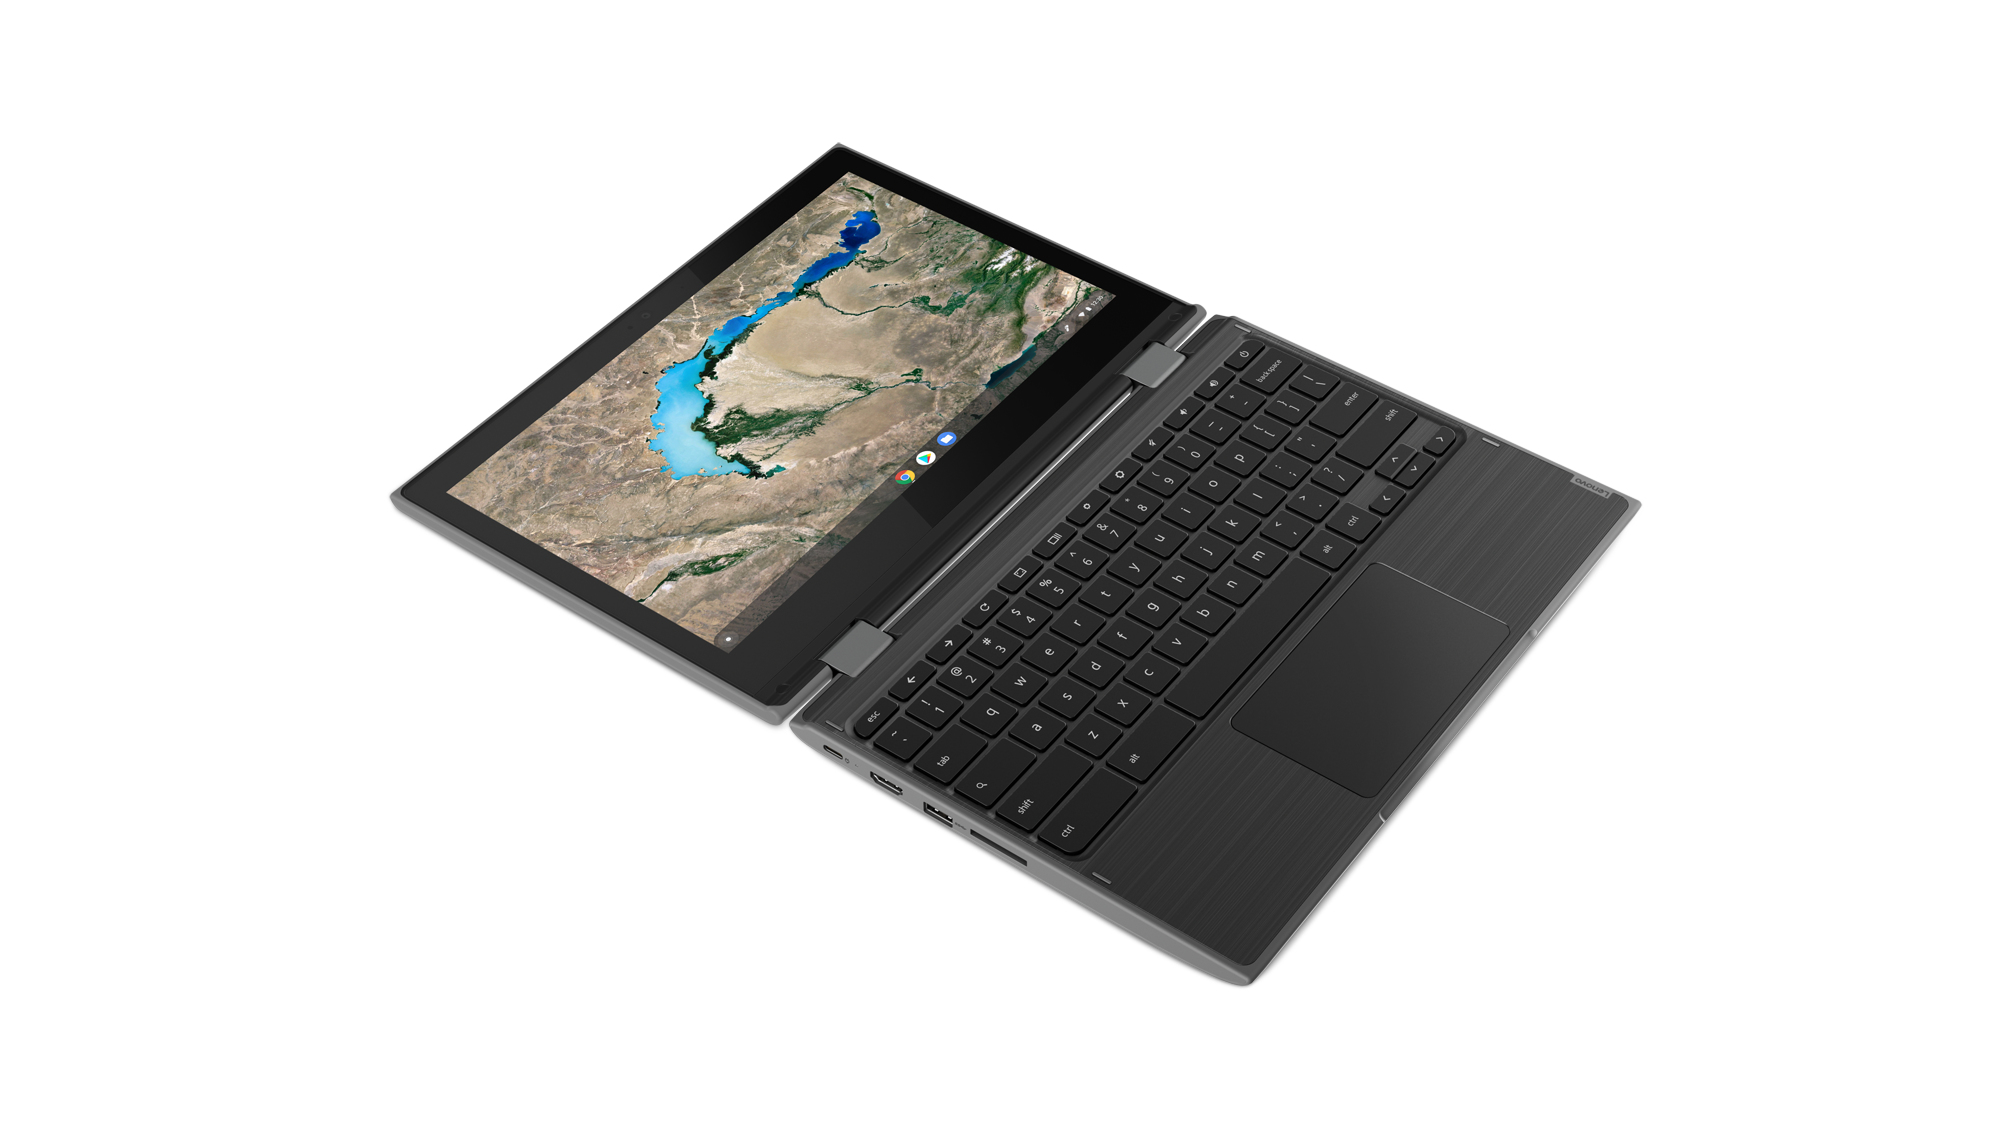 Notebook Lenovo 300e Chromebook 29,5 cm (11.6